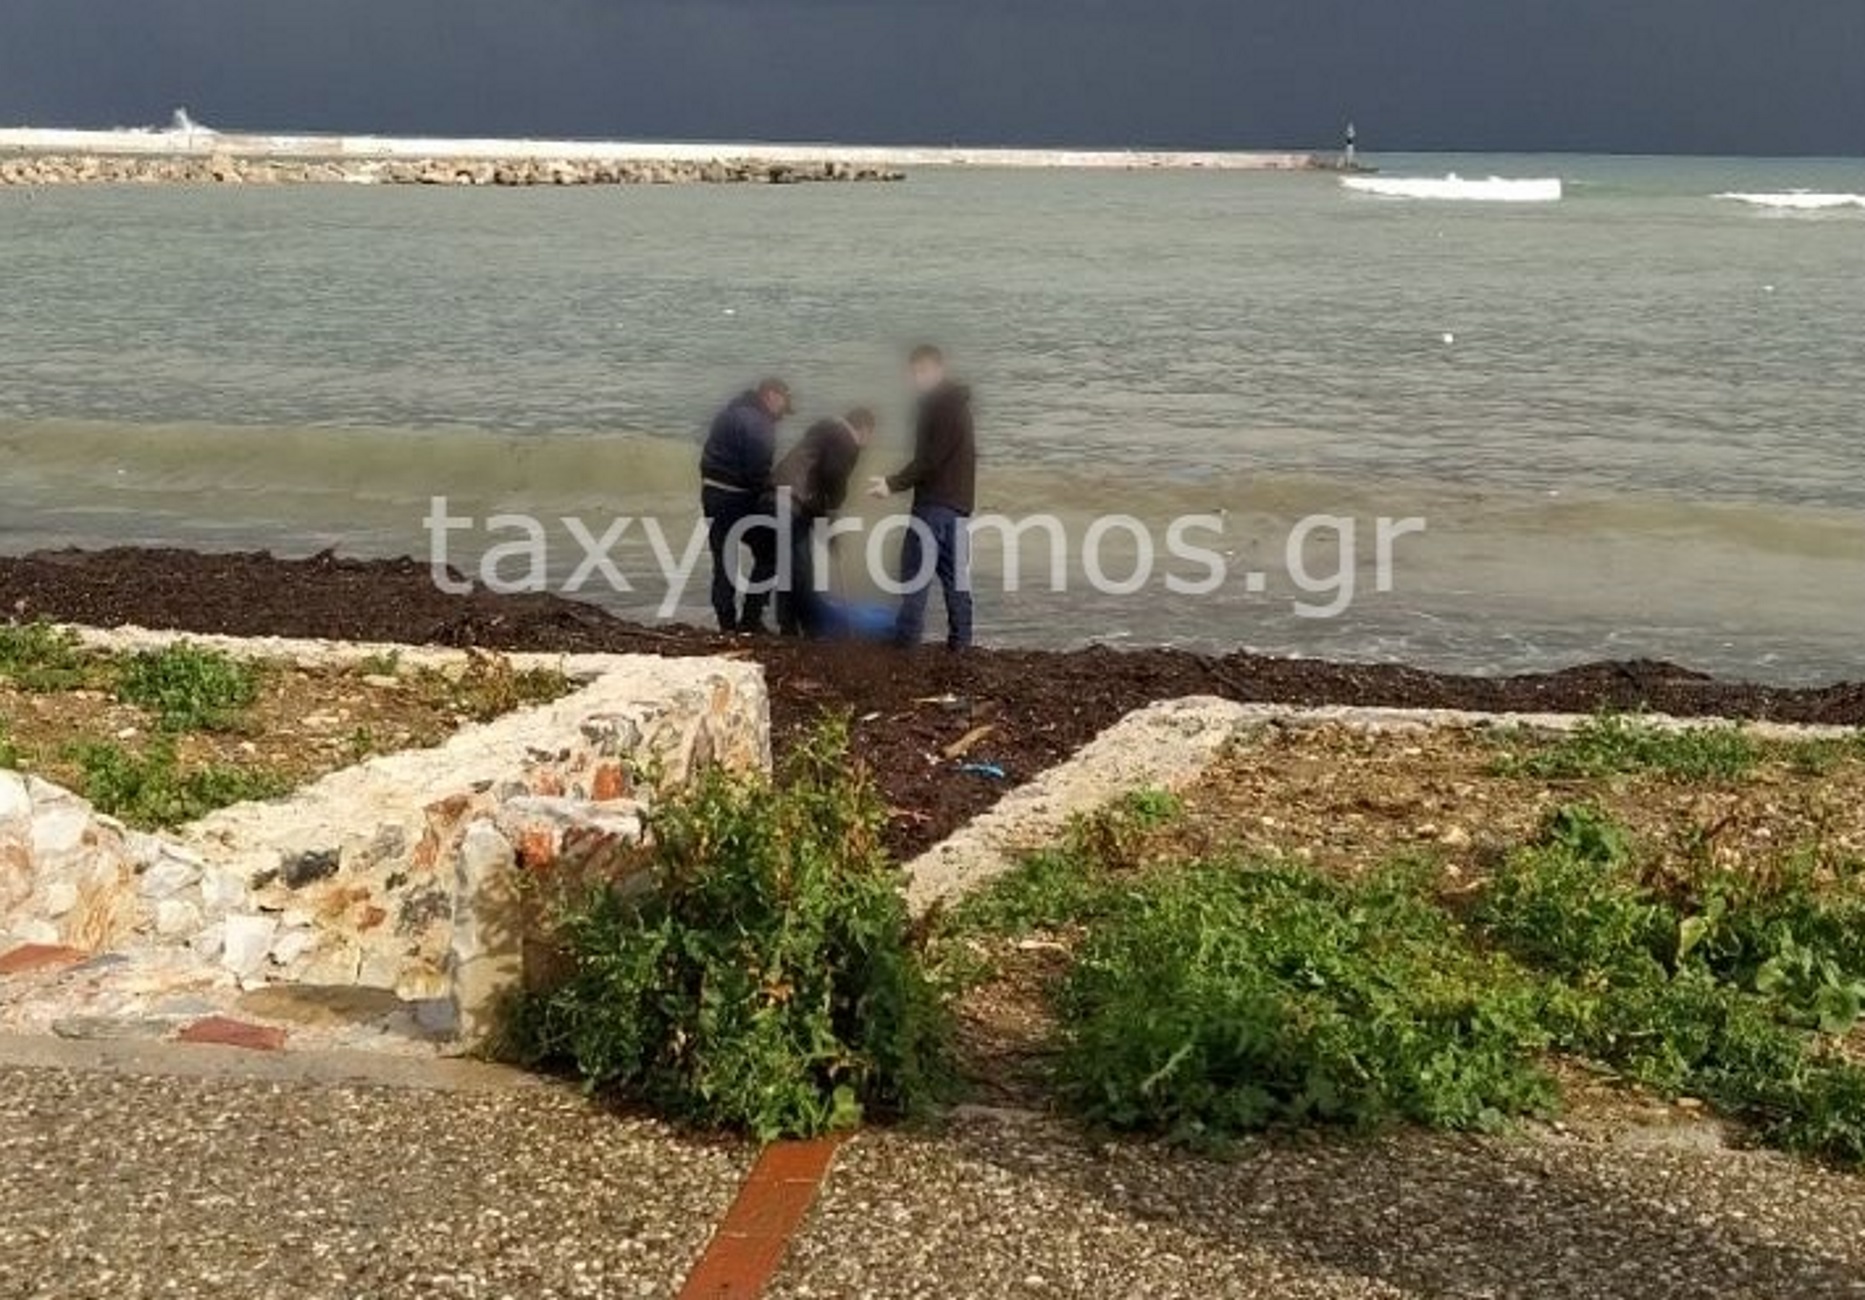 Σκόπελος: Πτώμα με ράσα στο λιμάνι του νησιού – Ανατριχιαστικές εικόνες σε υπόθεση θρίλερ